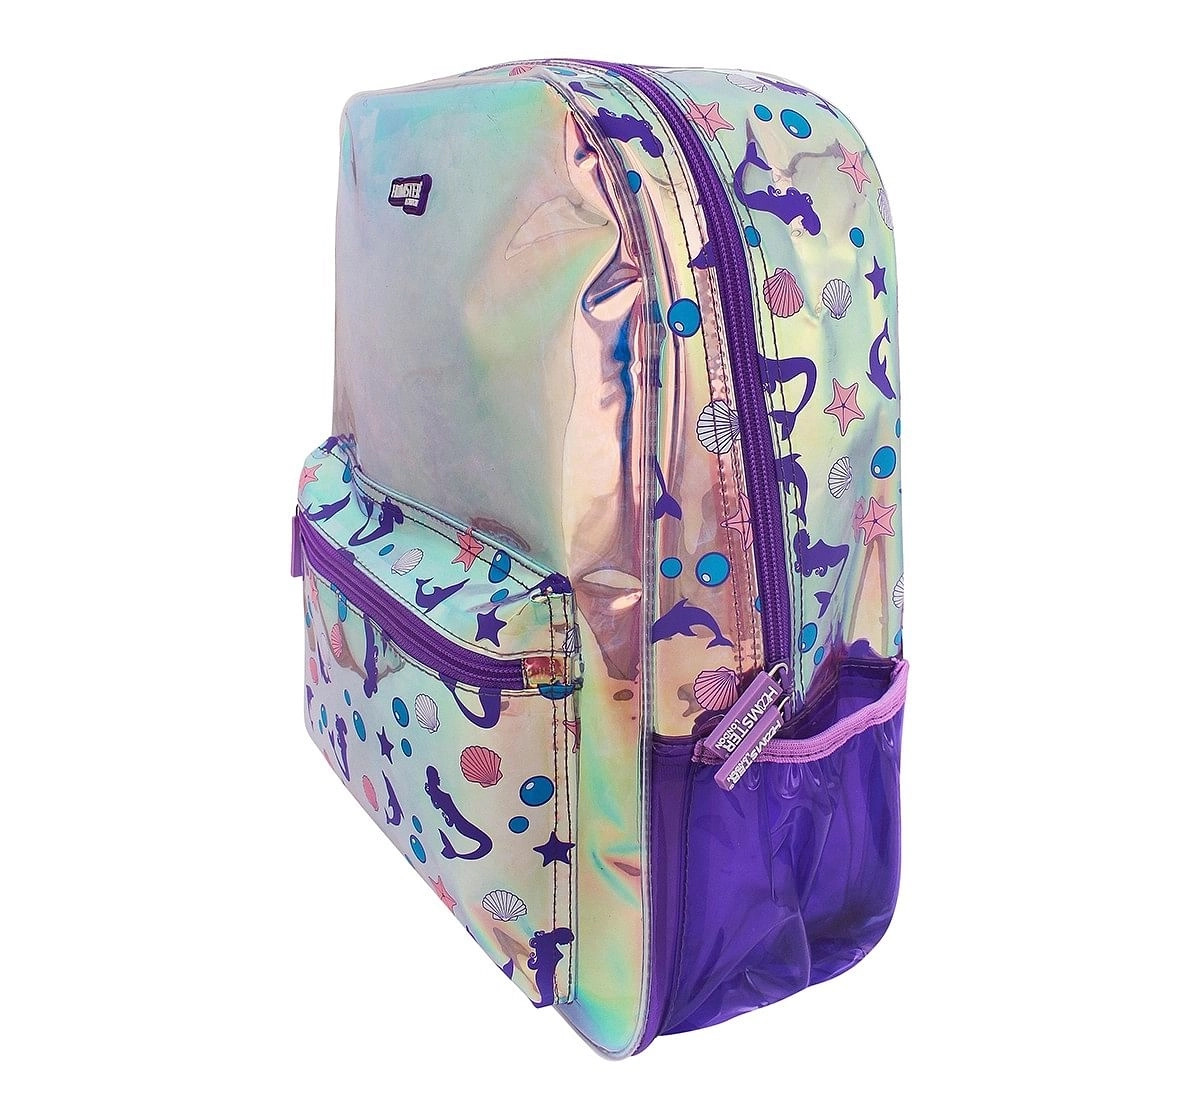 Hamster London Big Mermaid Backpack for age 3Y+ (Purple)